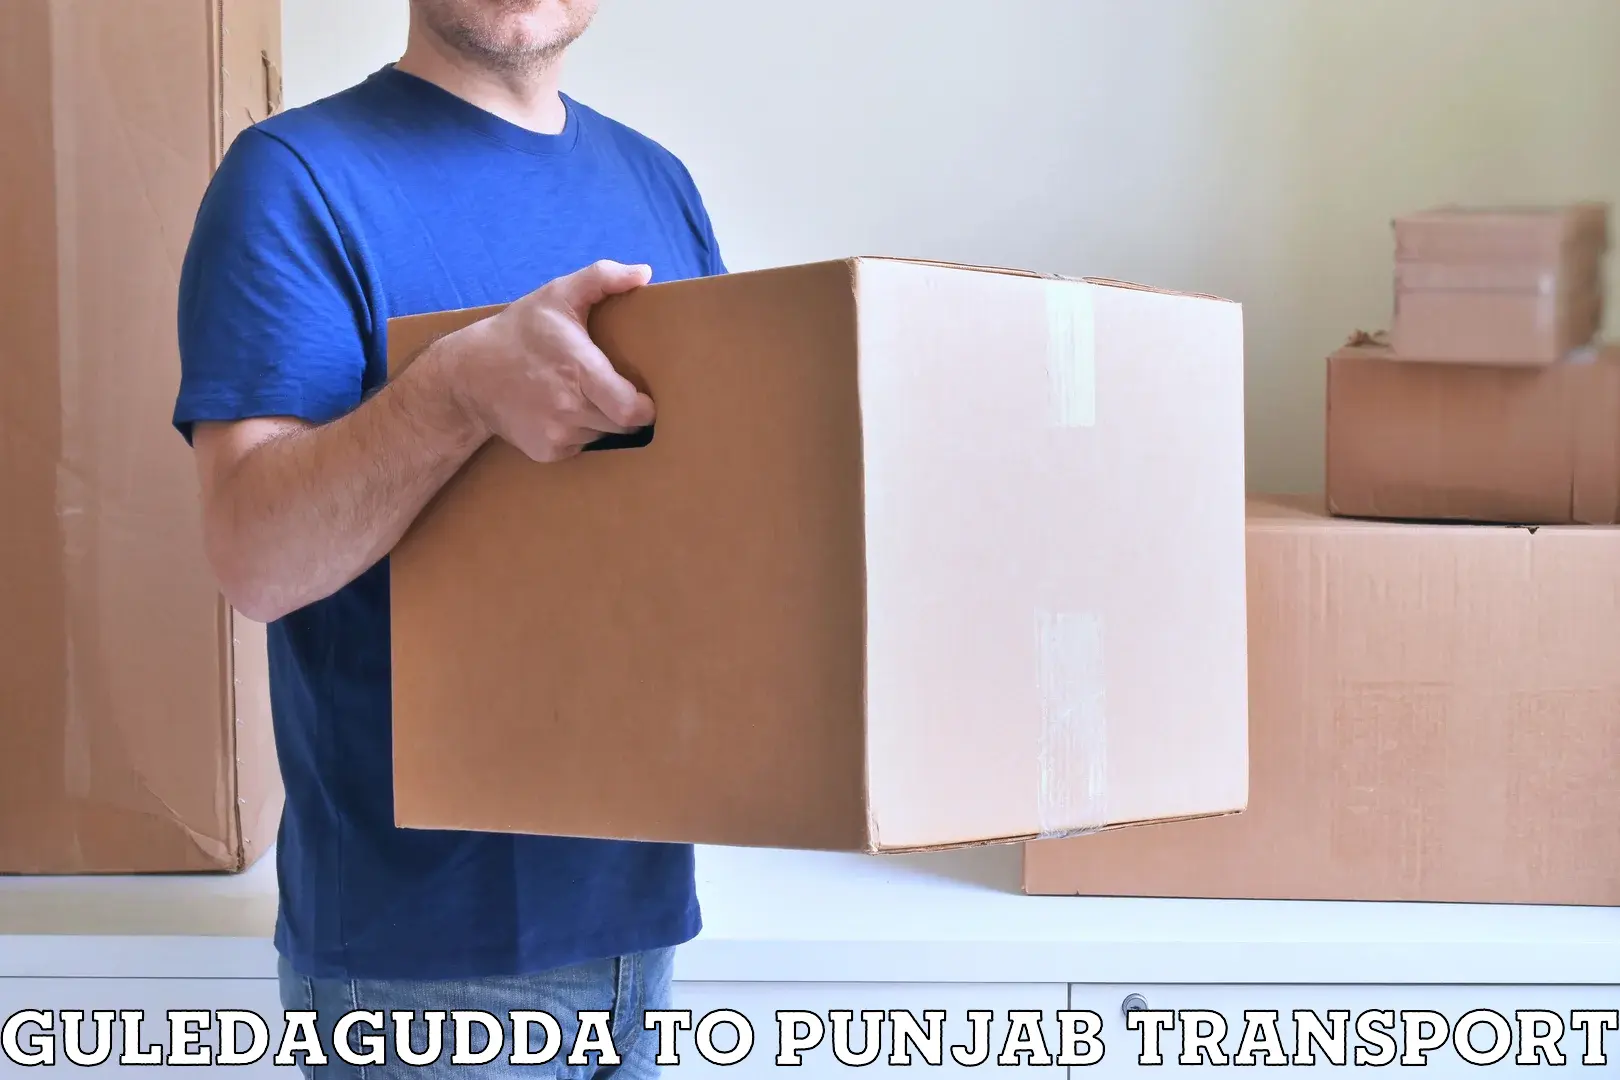 Shipping services Guledagudda to Tarsikka